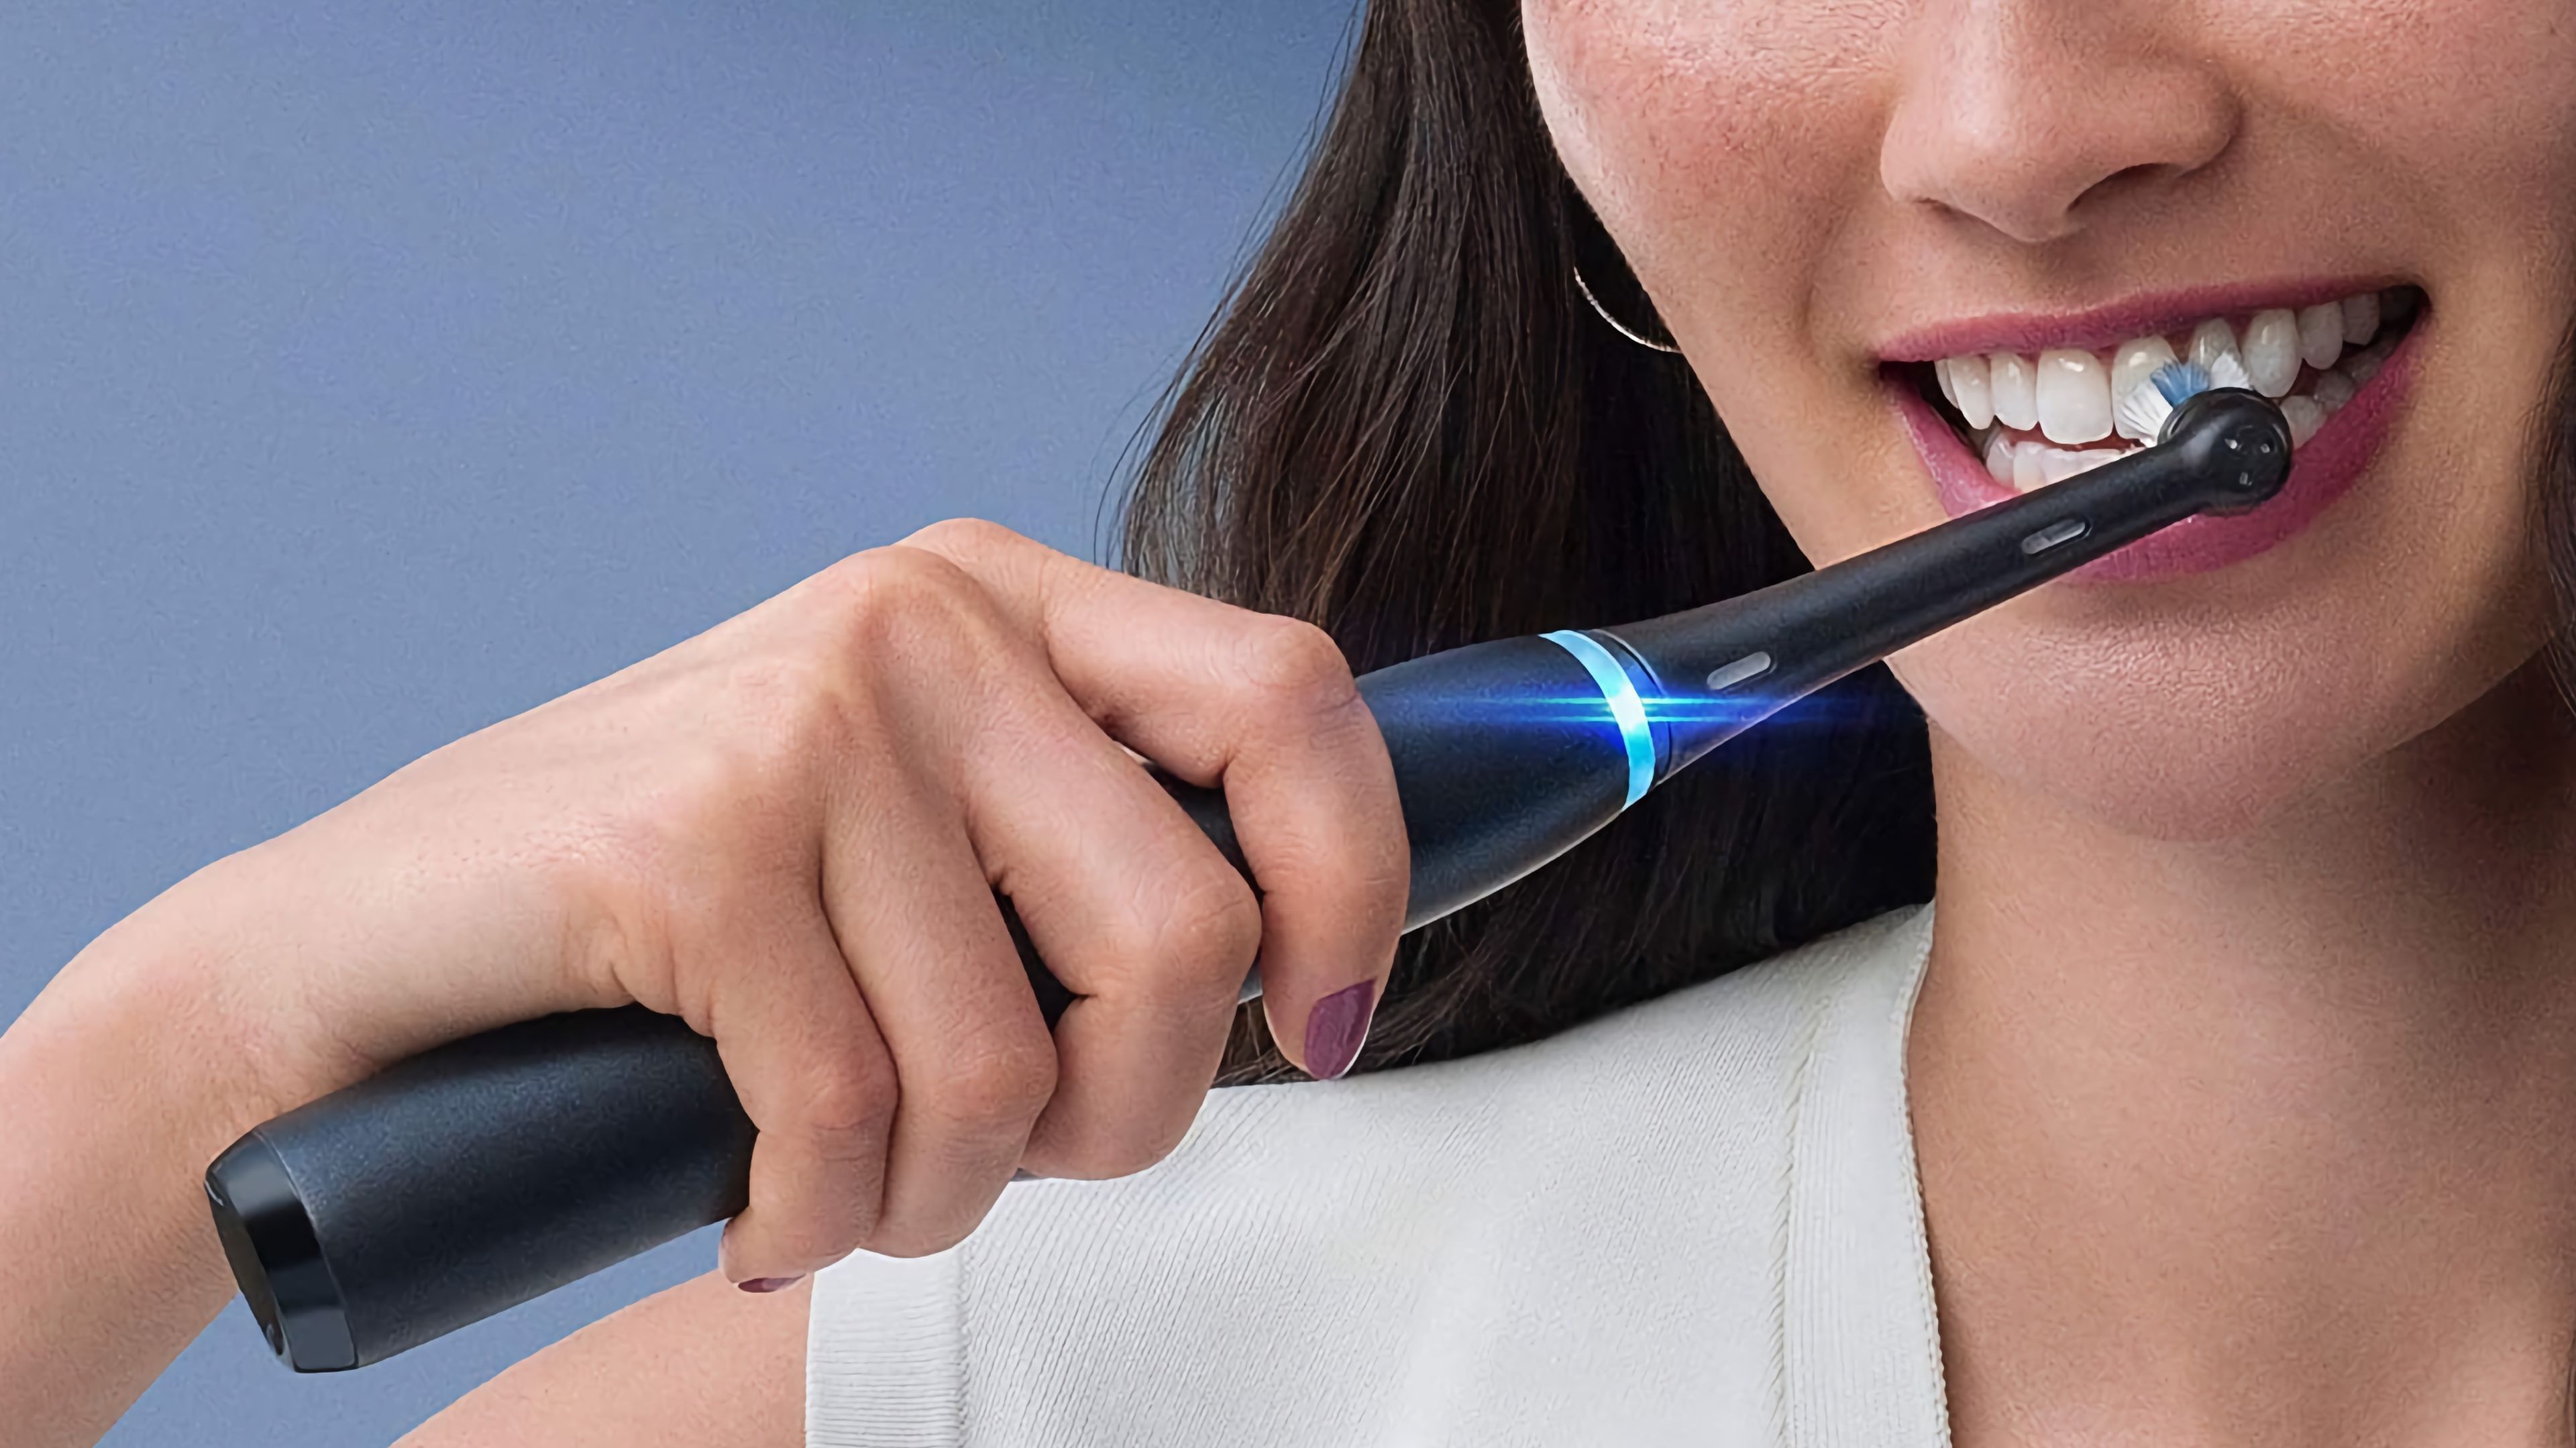 Cepillos Oral-B: estos son los modelos que puedes comprar | Computer Hoy